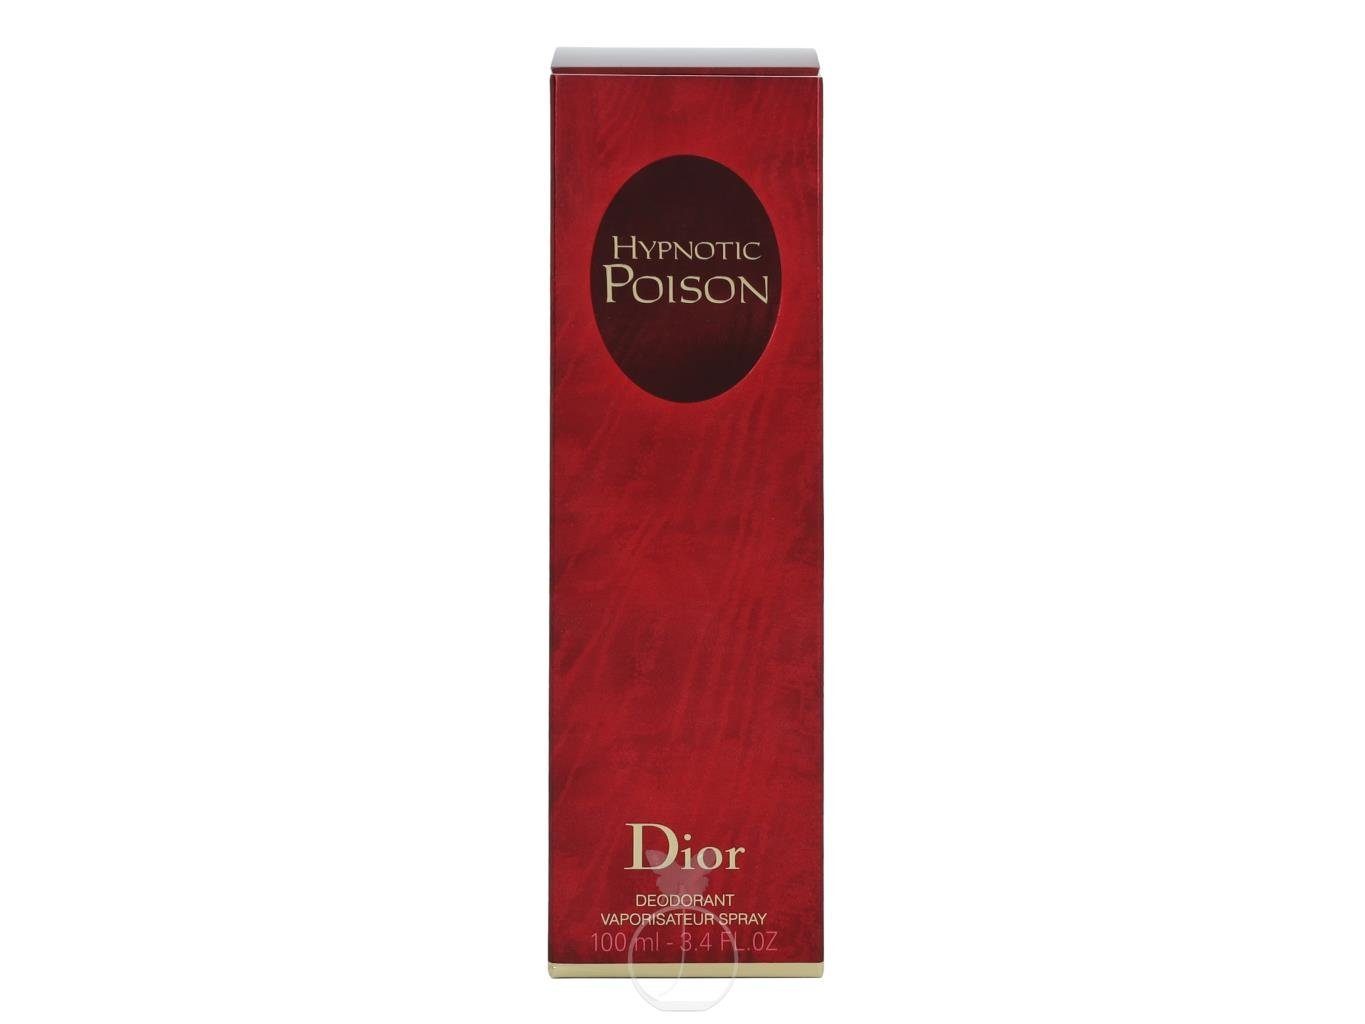 Dior Körperpflegeduft Deodorant ml Poison Hypnotic Dior 100